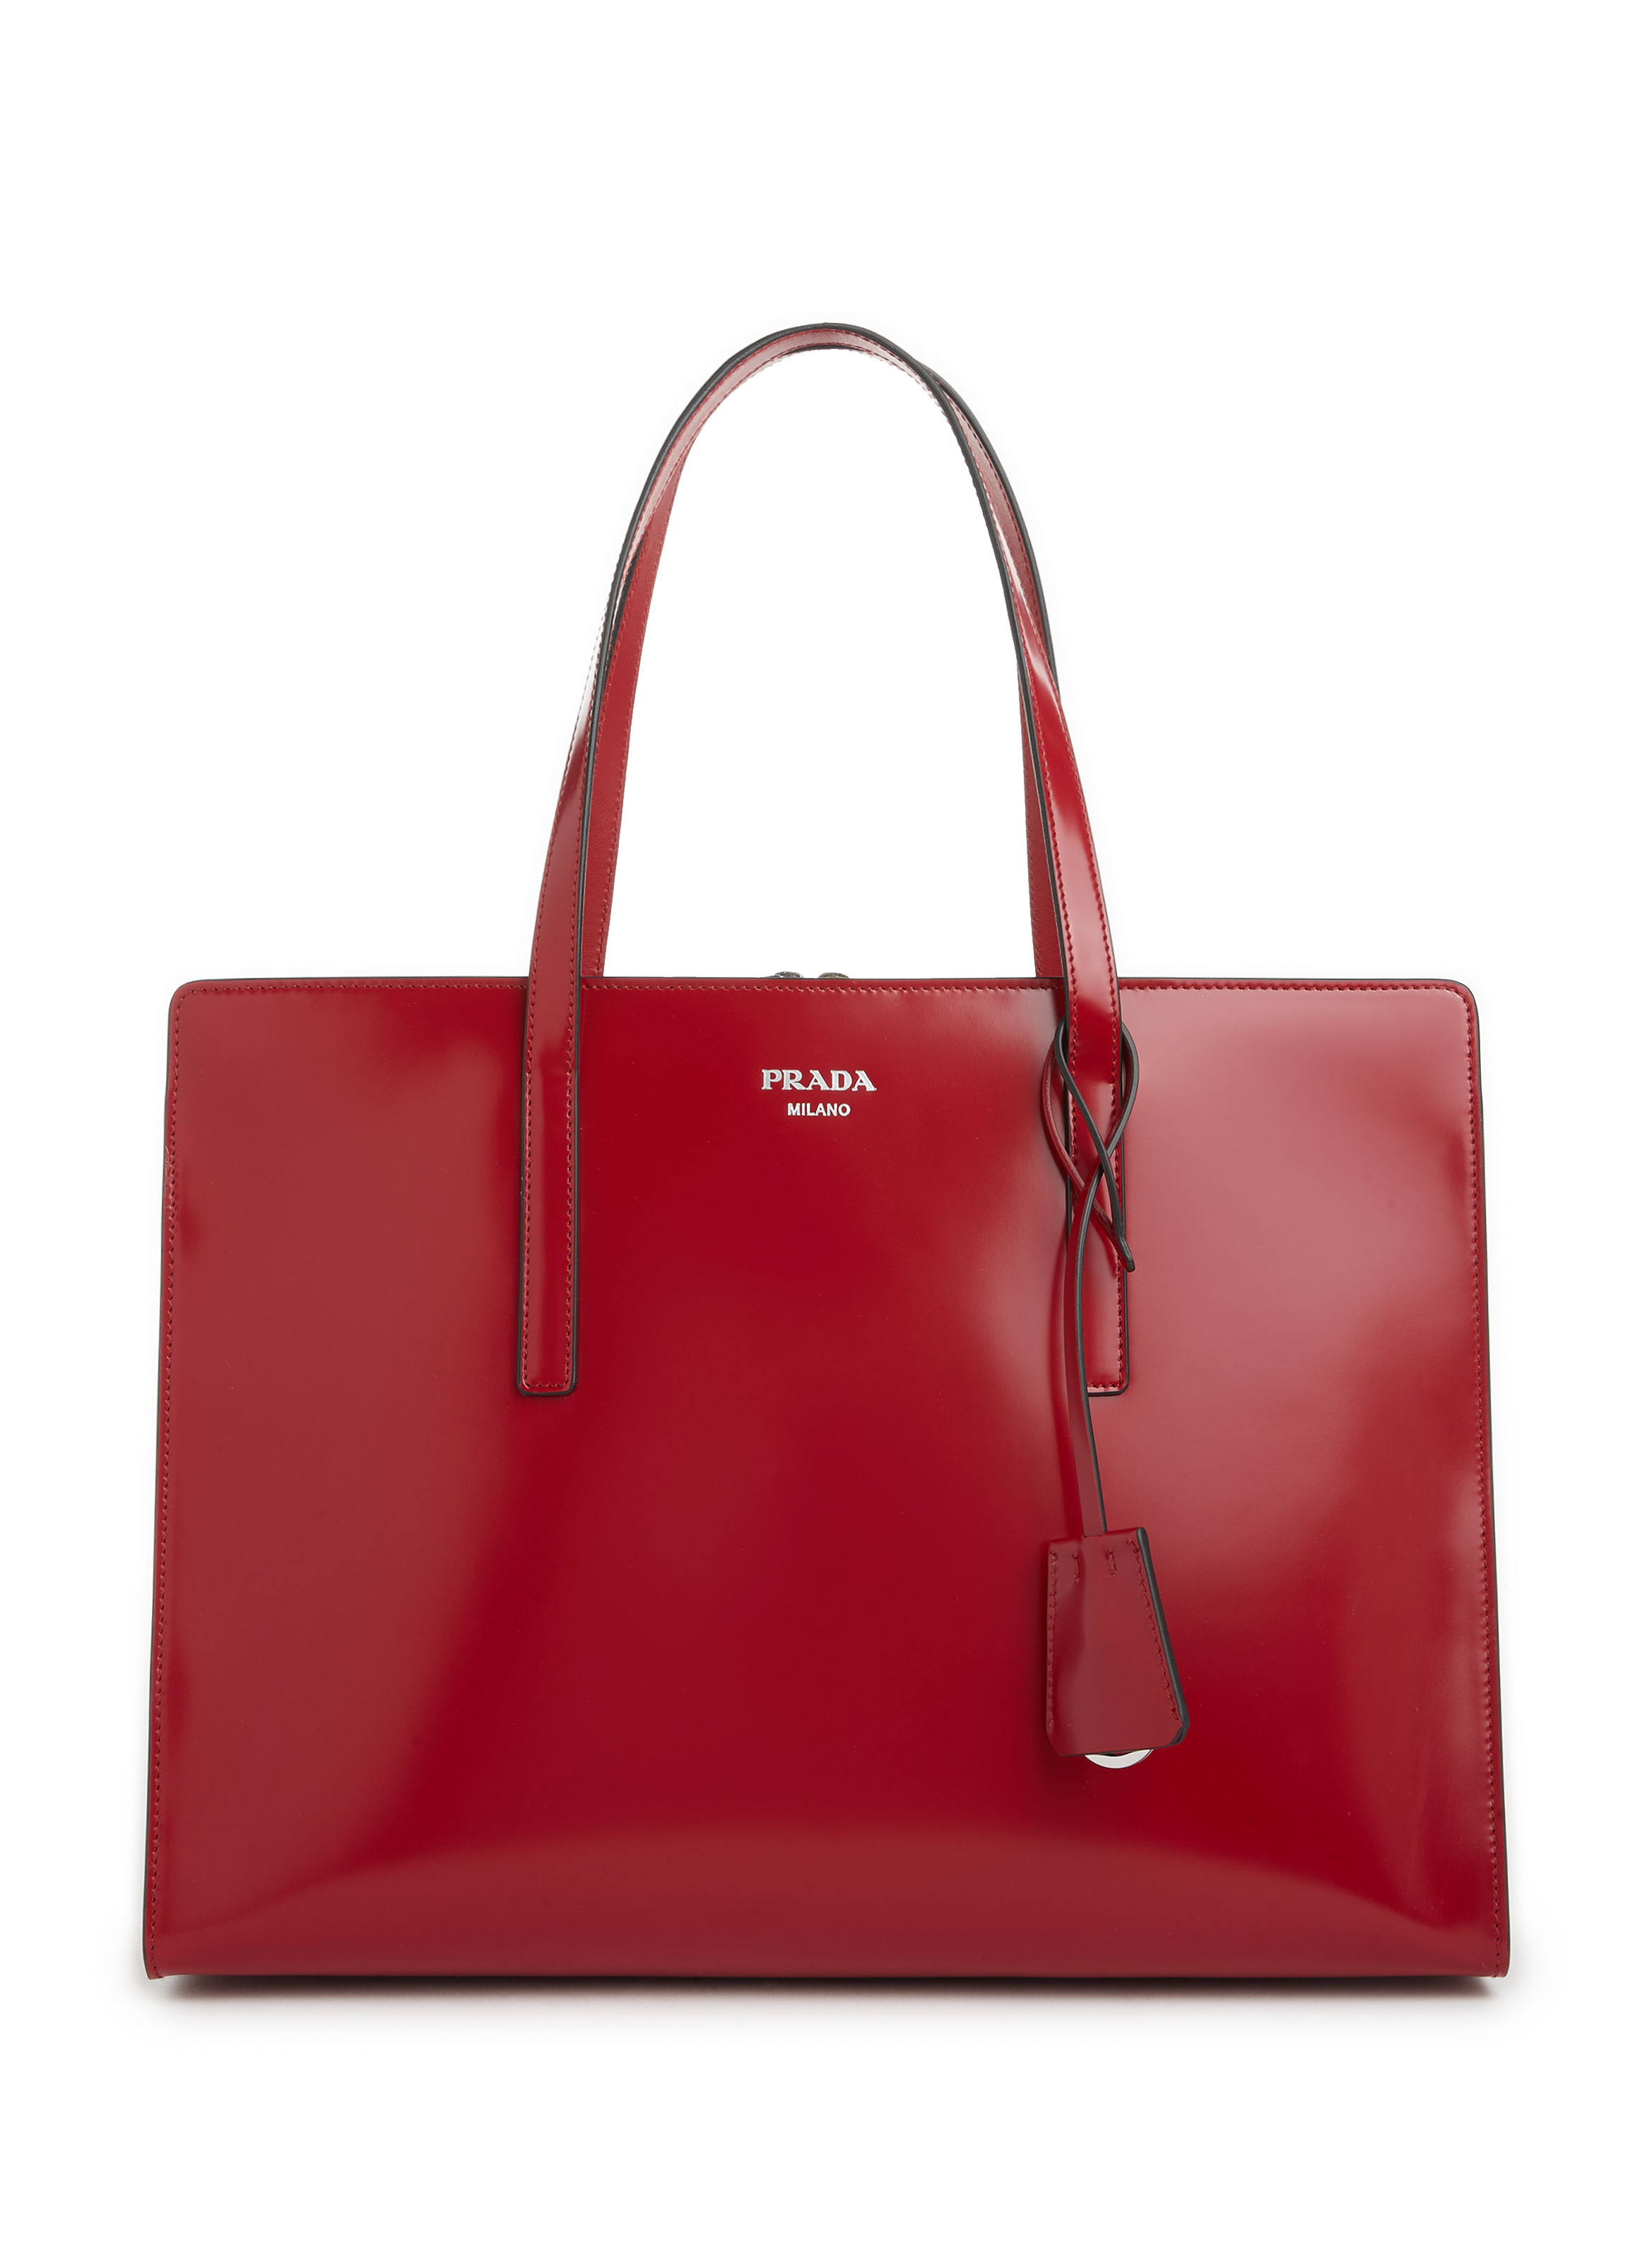 Prada Red shoulder/bucket leather bag | eBay